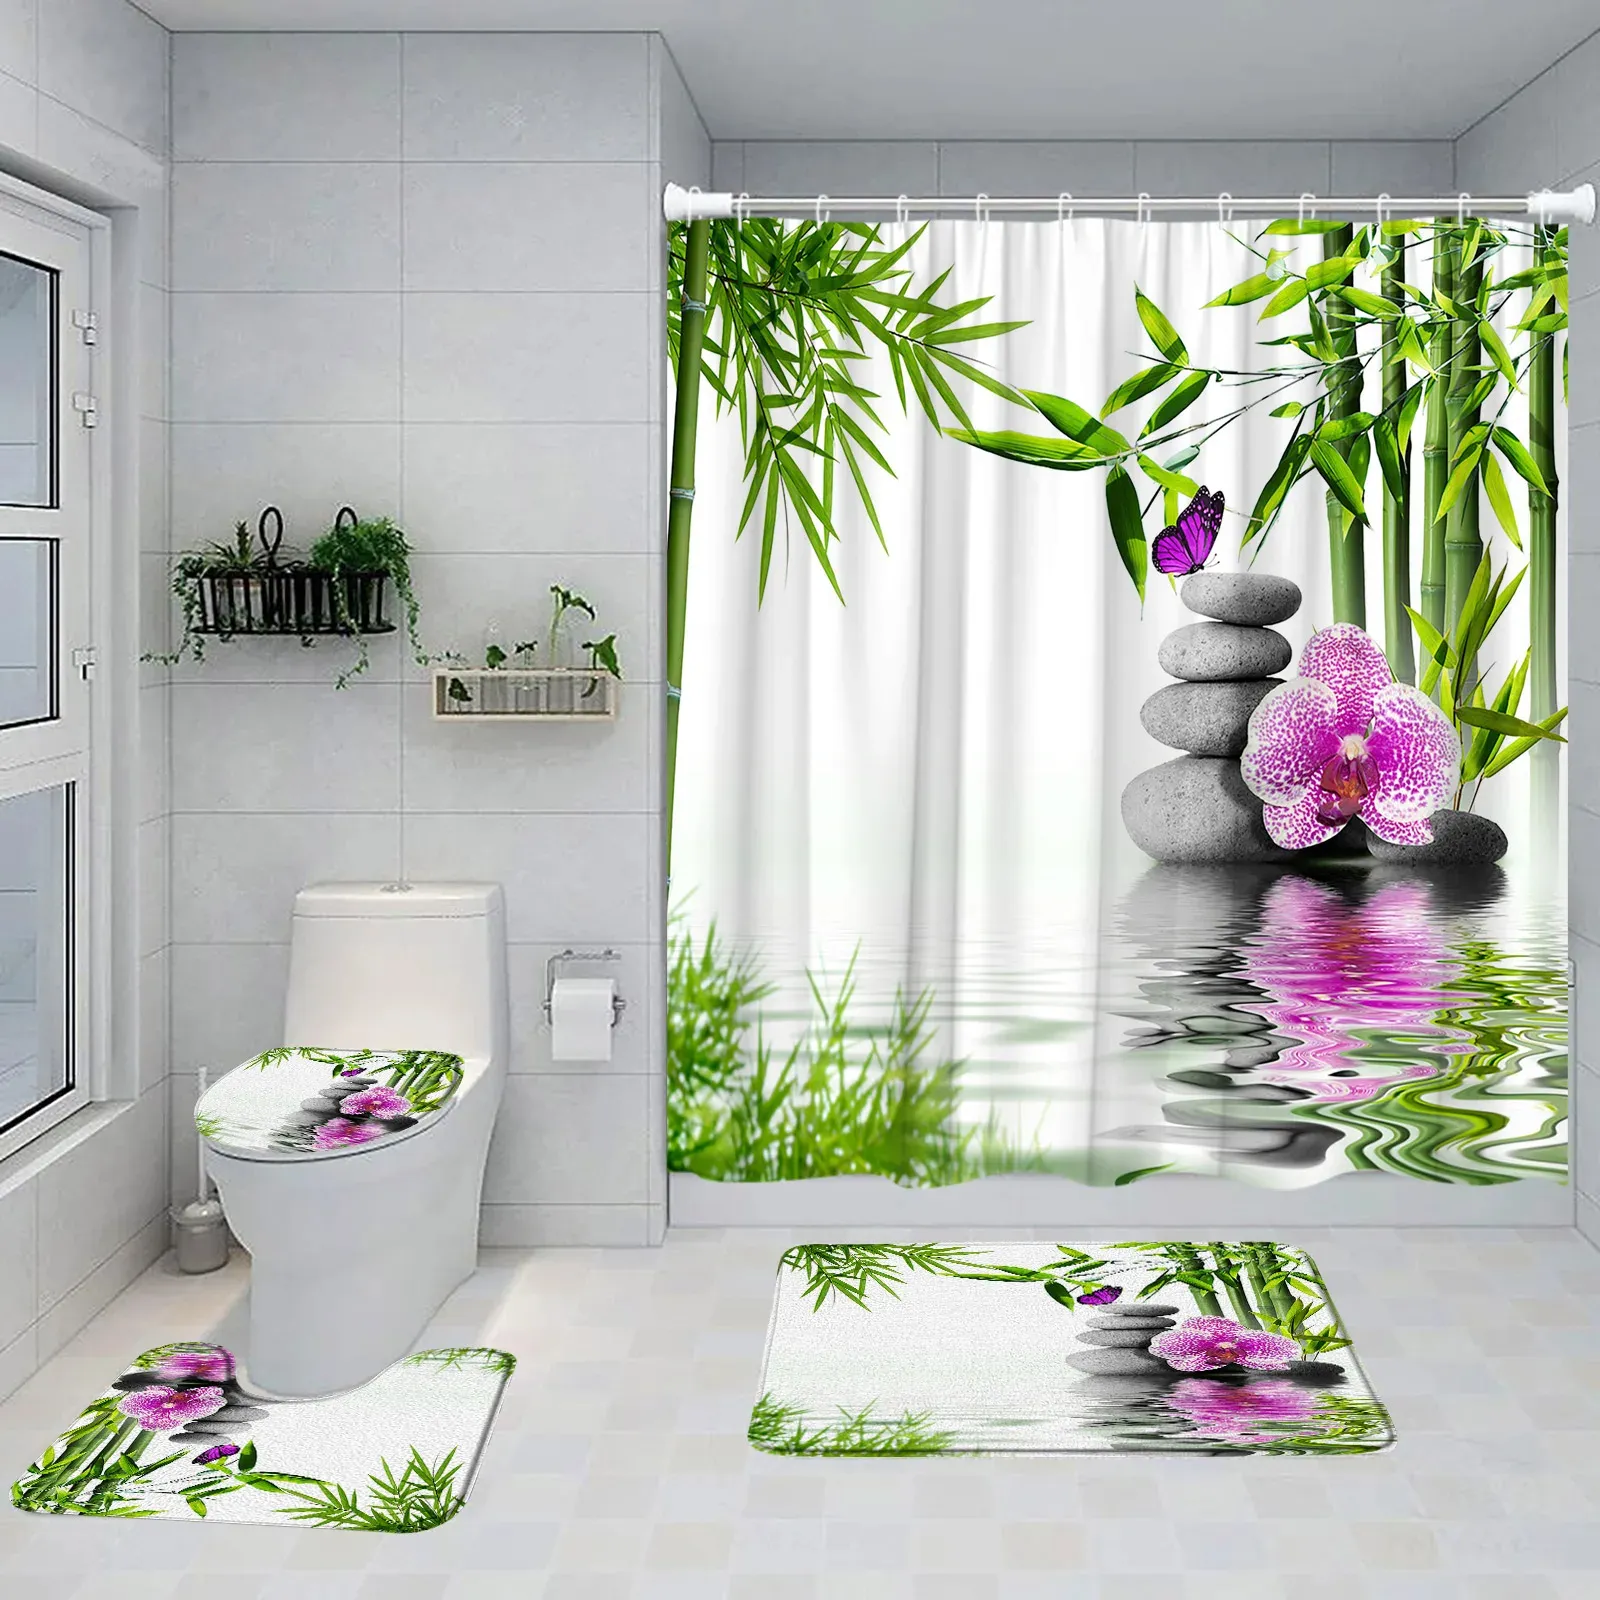 Зеленая бамбуковая занавеска для душа, набор фиолетовых орхидей, бабочек, серого камня, декоративный коврик для ванной комнаты